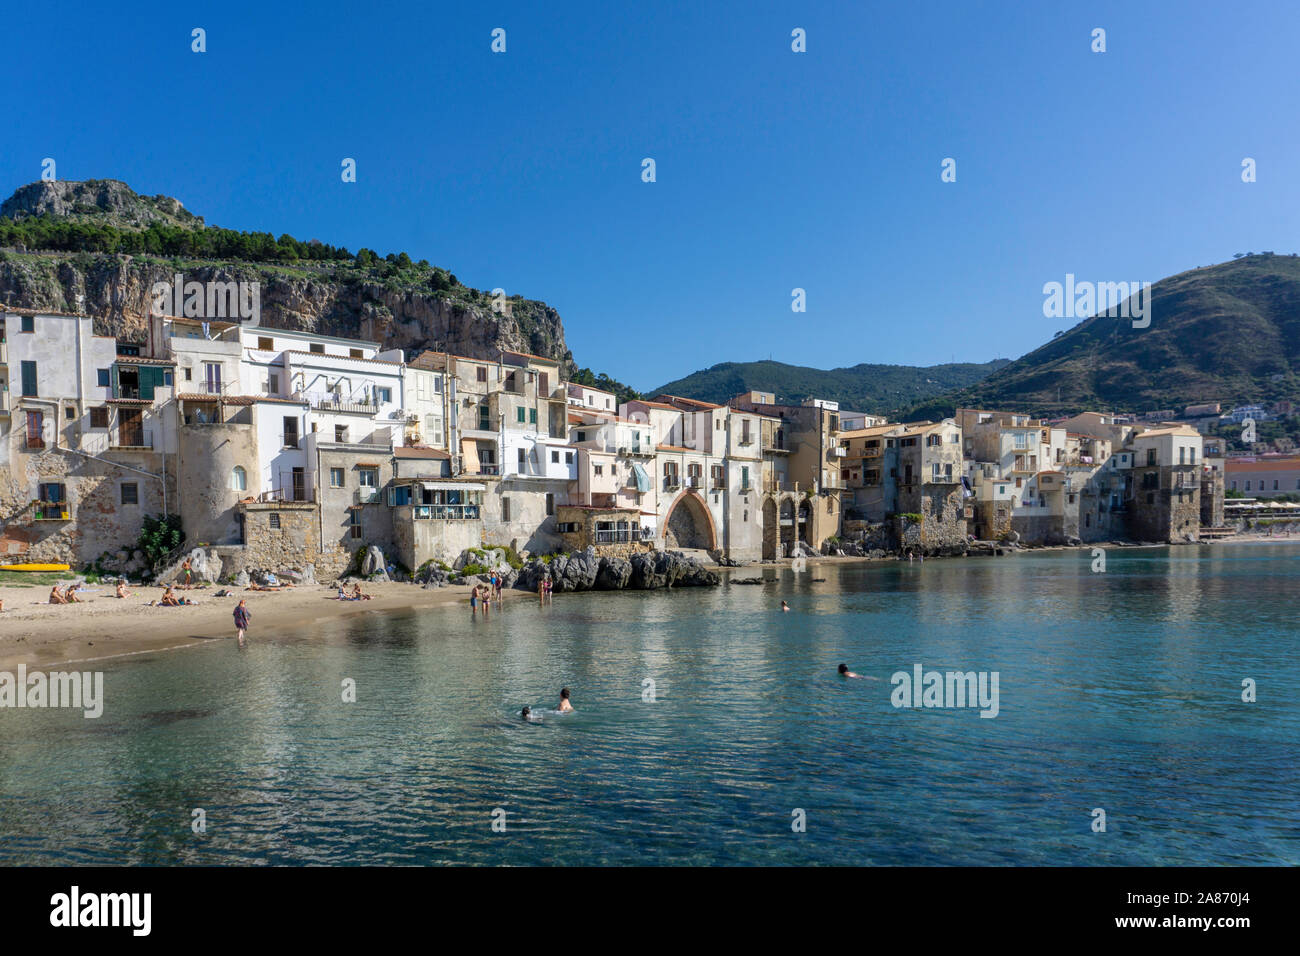 La vieille ville de Cefalú, Sicile, en Italie, en vue de l'embarcadère avec la dent de rocher connu sous le nom de la Rocca qui pèse sur la ville. Banque D'Images